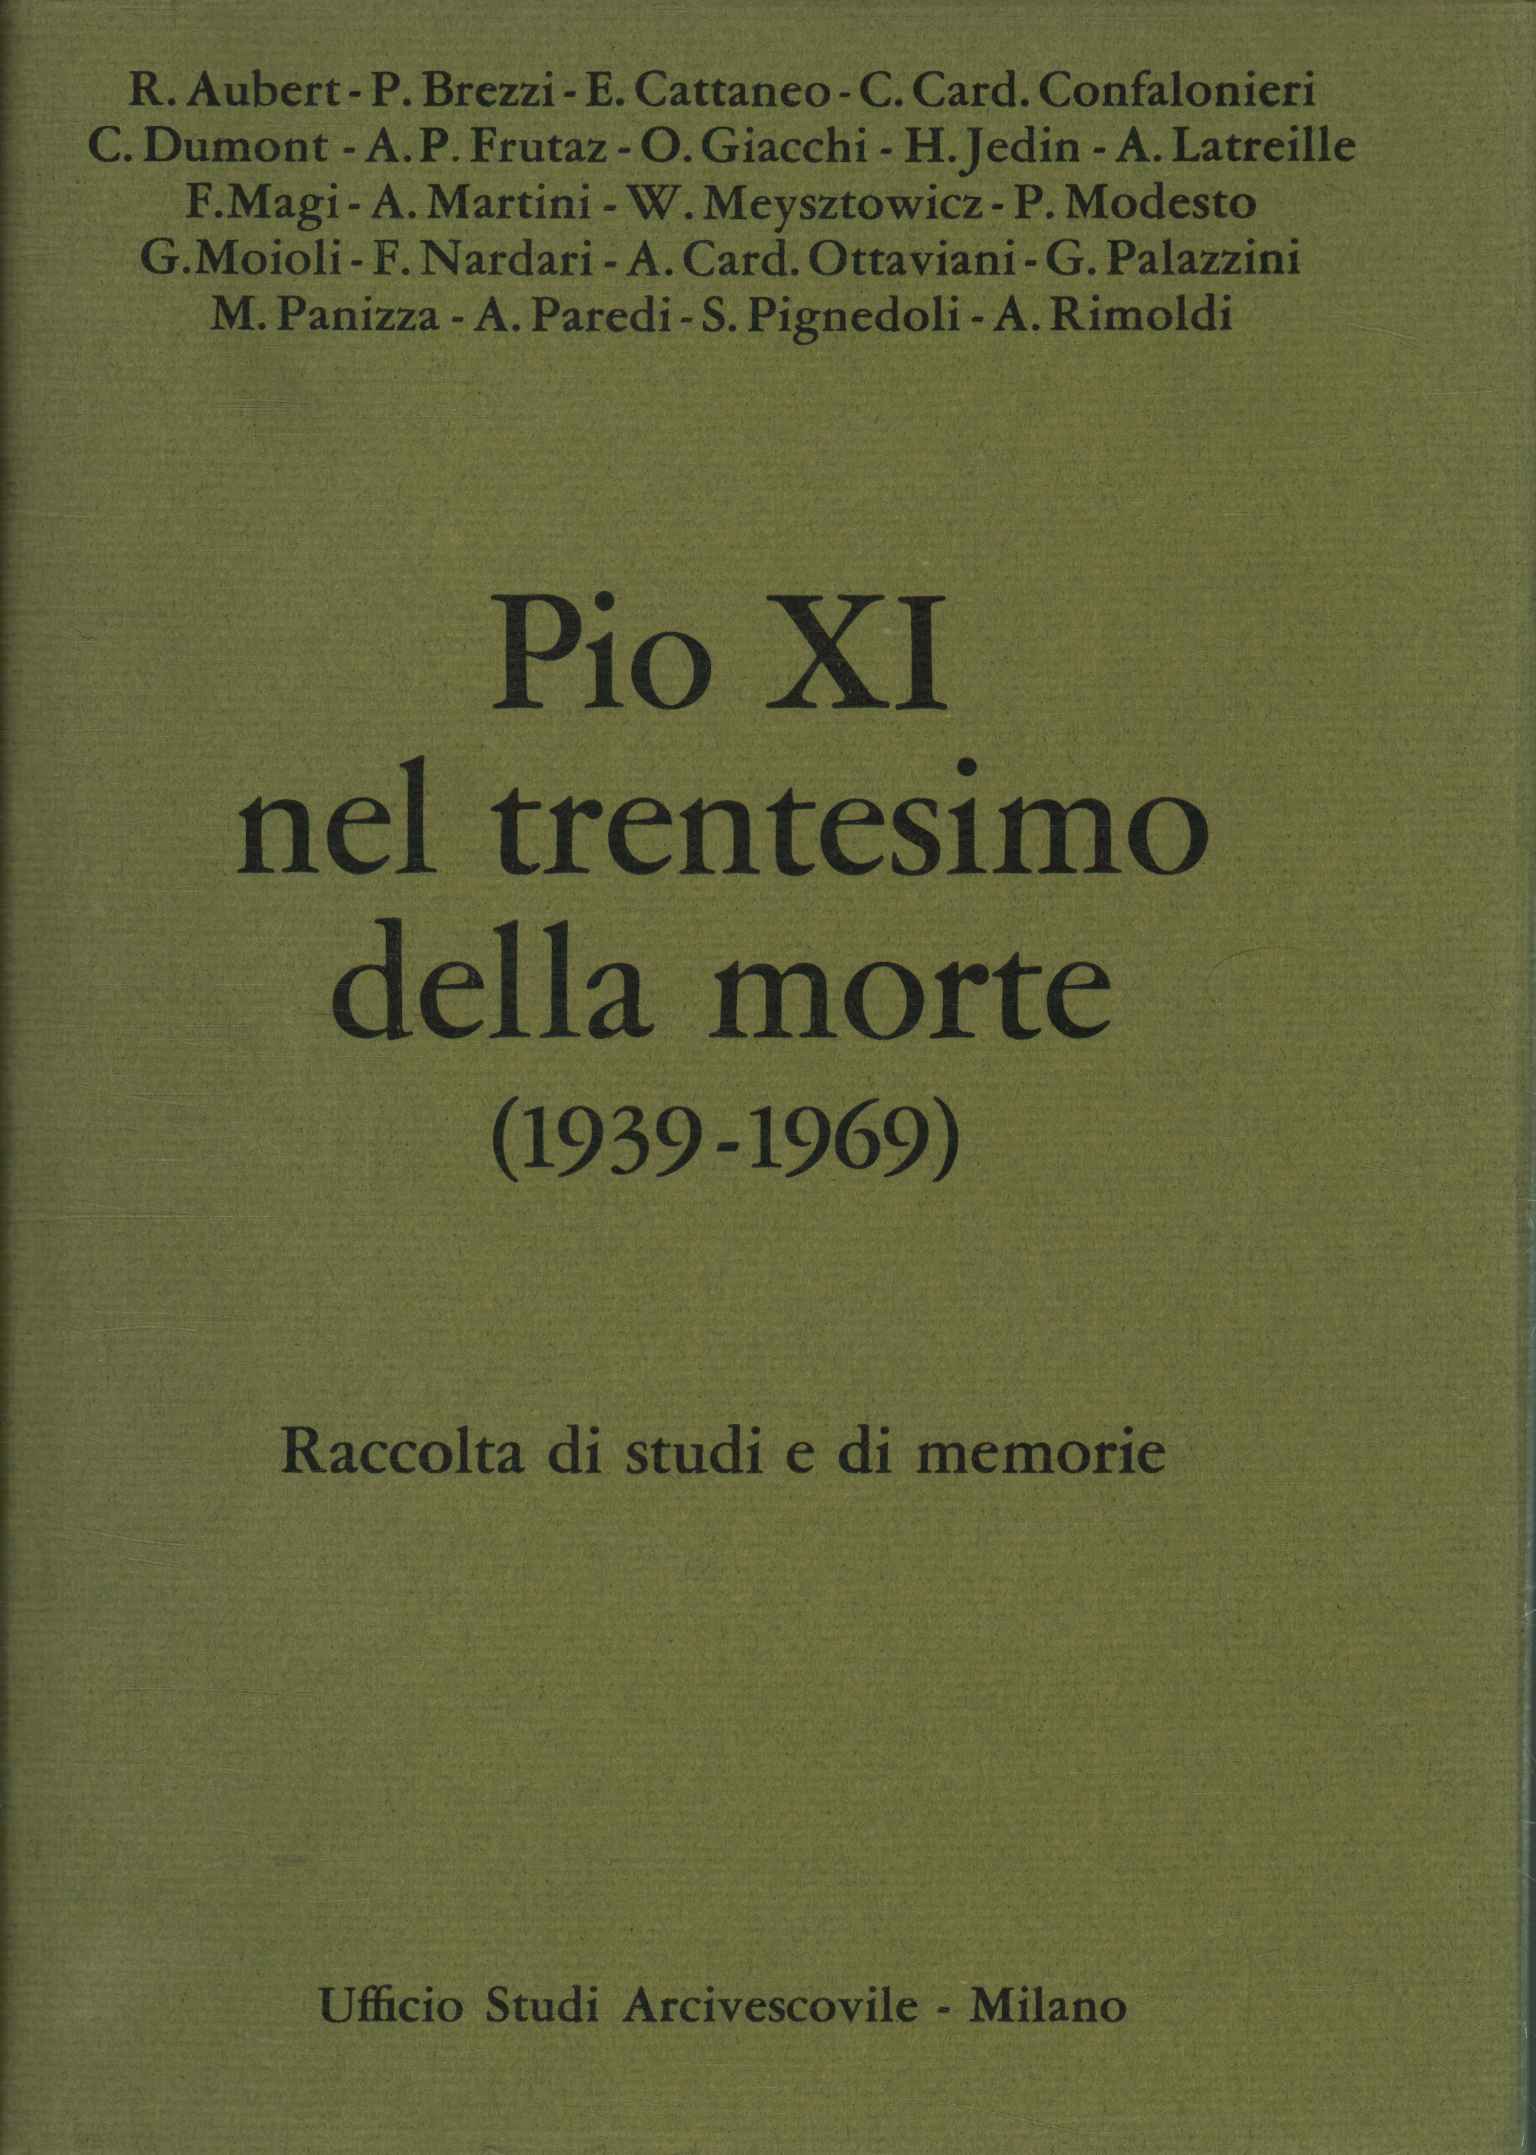 Pius XI. zum dreißigsten Todestag (193